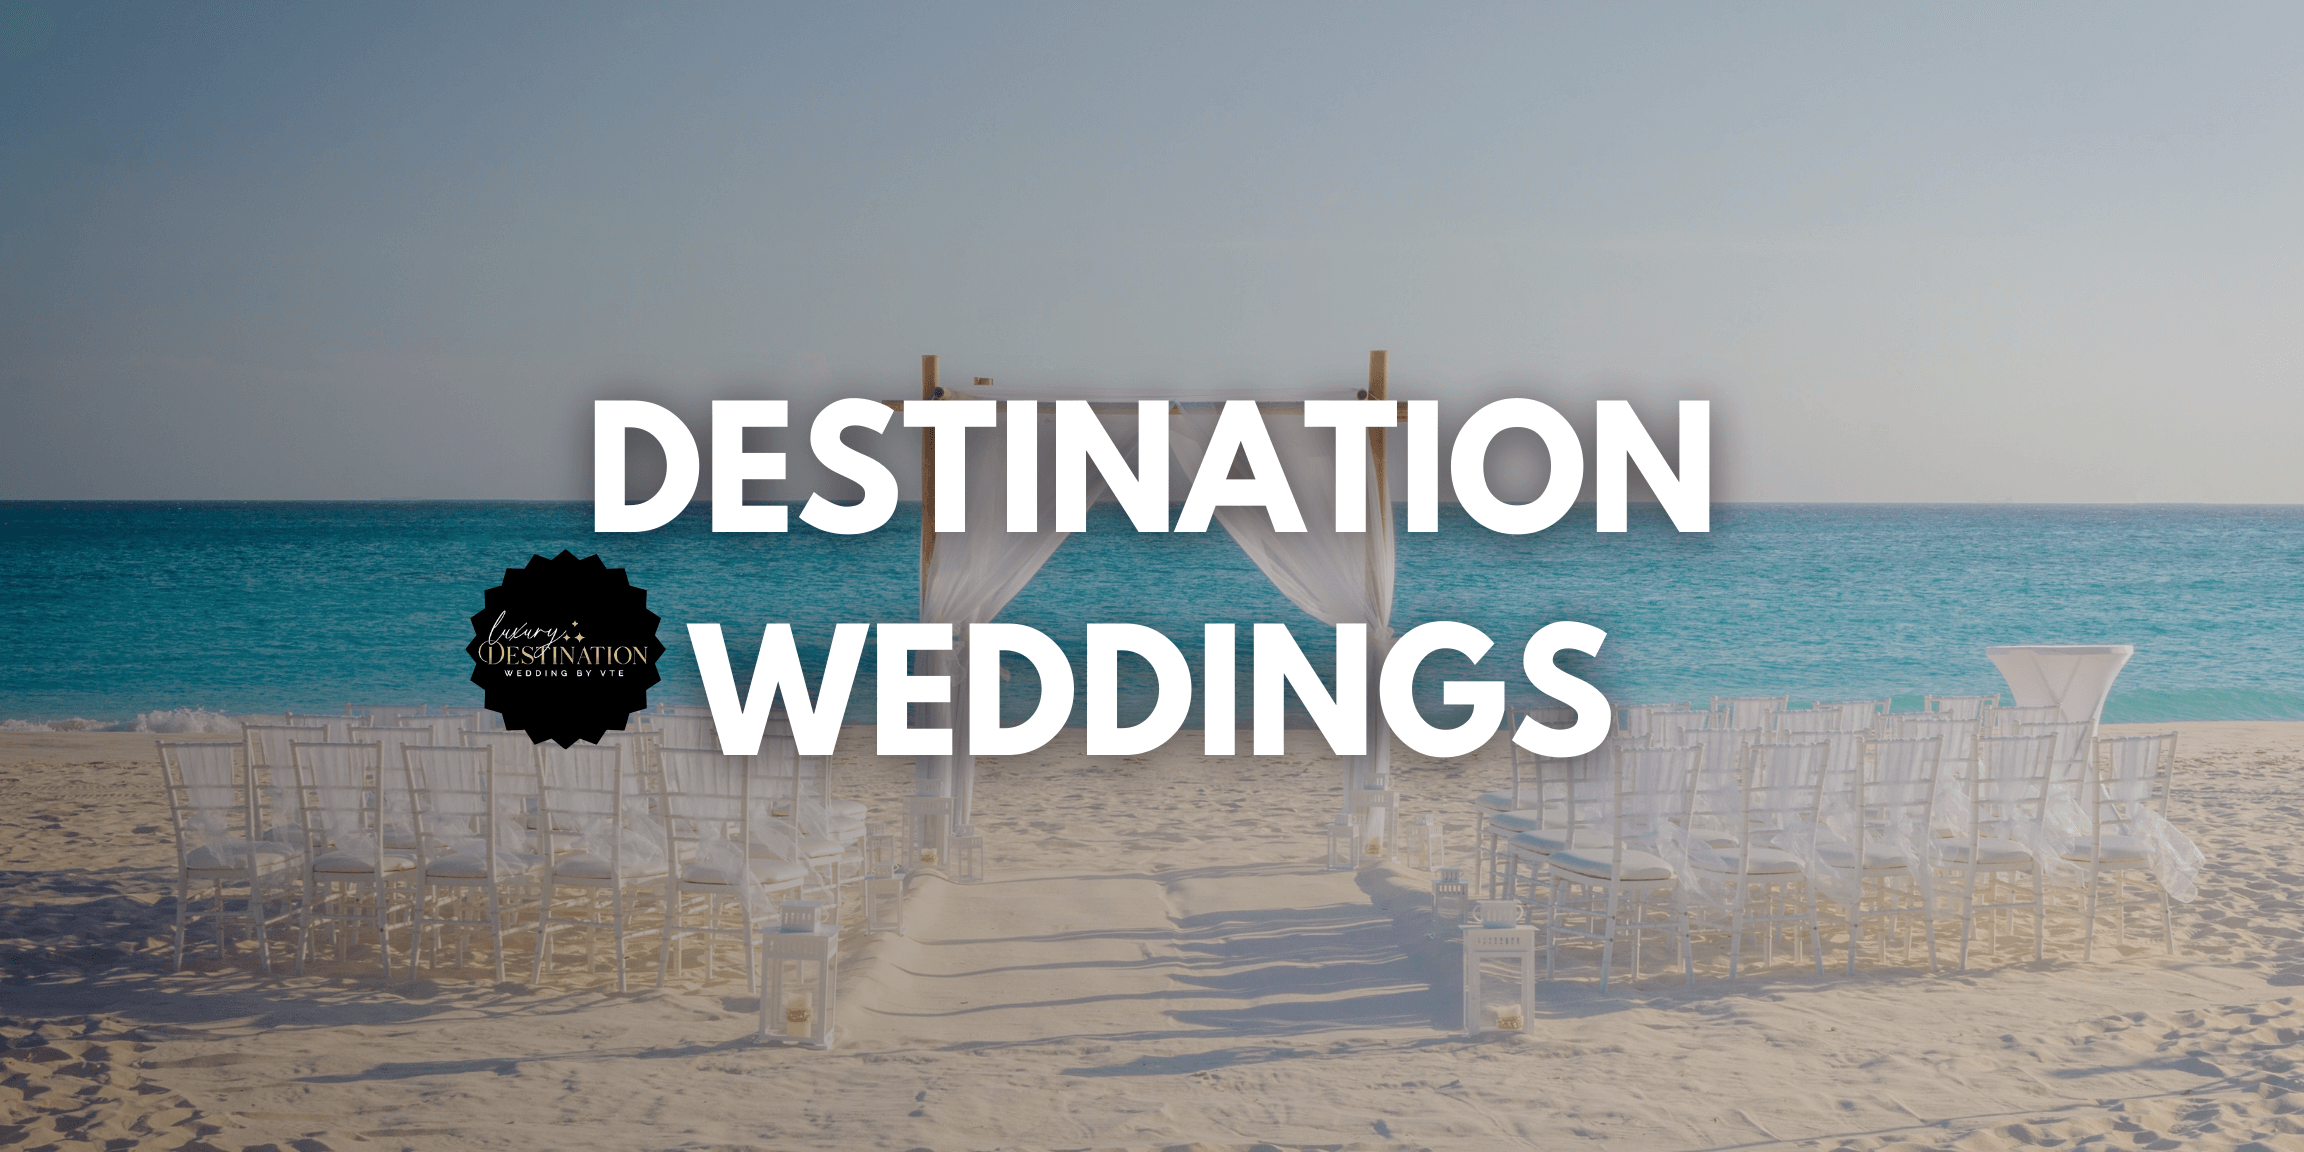 Destination Weddings Agency Dallas